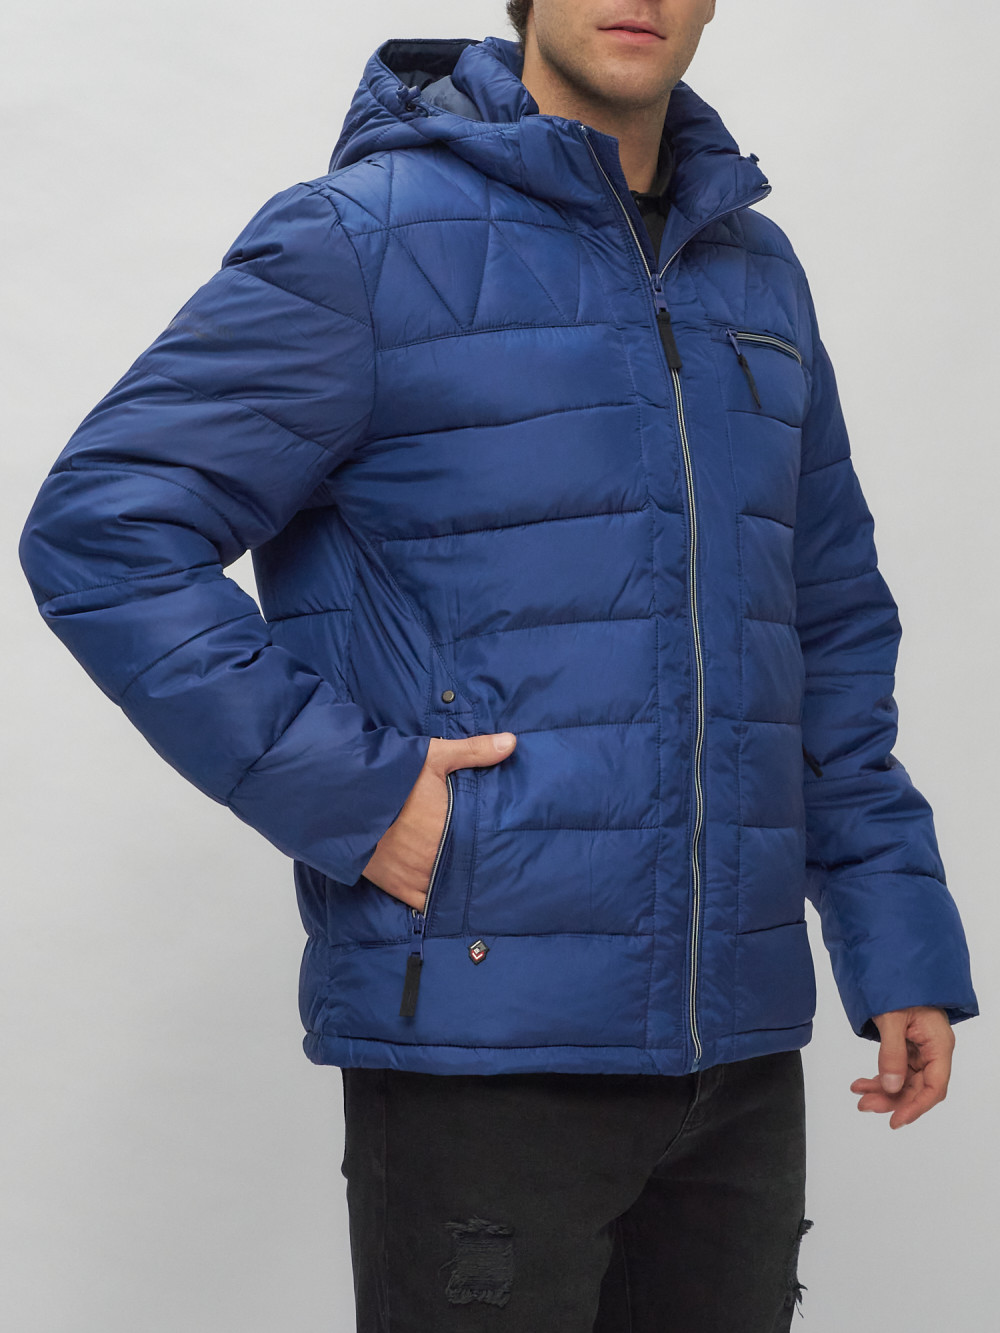 Купить куртку мужскую спортивную весеннюю оптом от производителя недорого в Москве 62187S 1